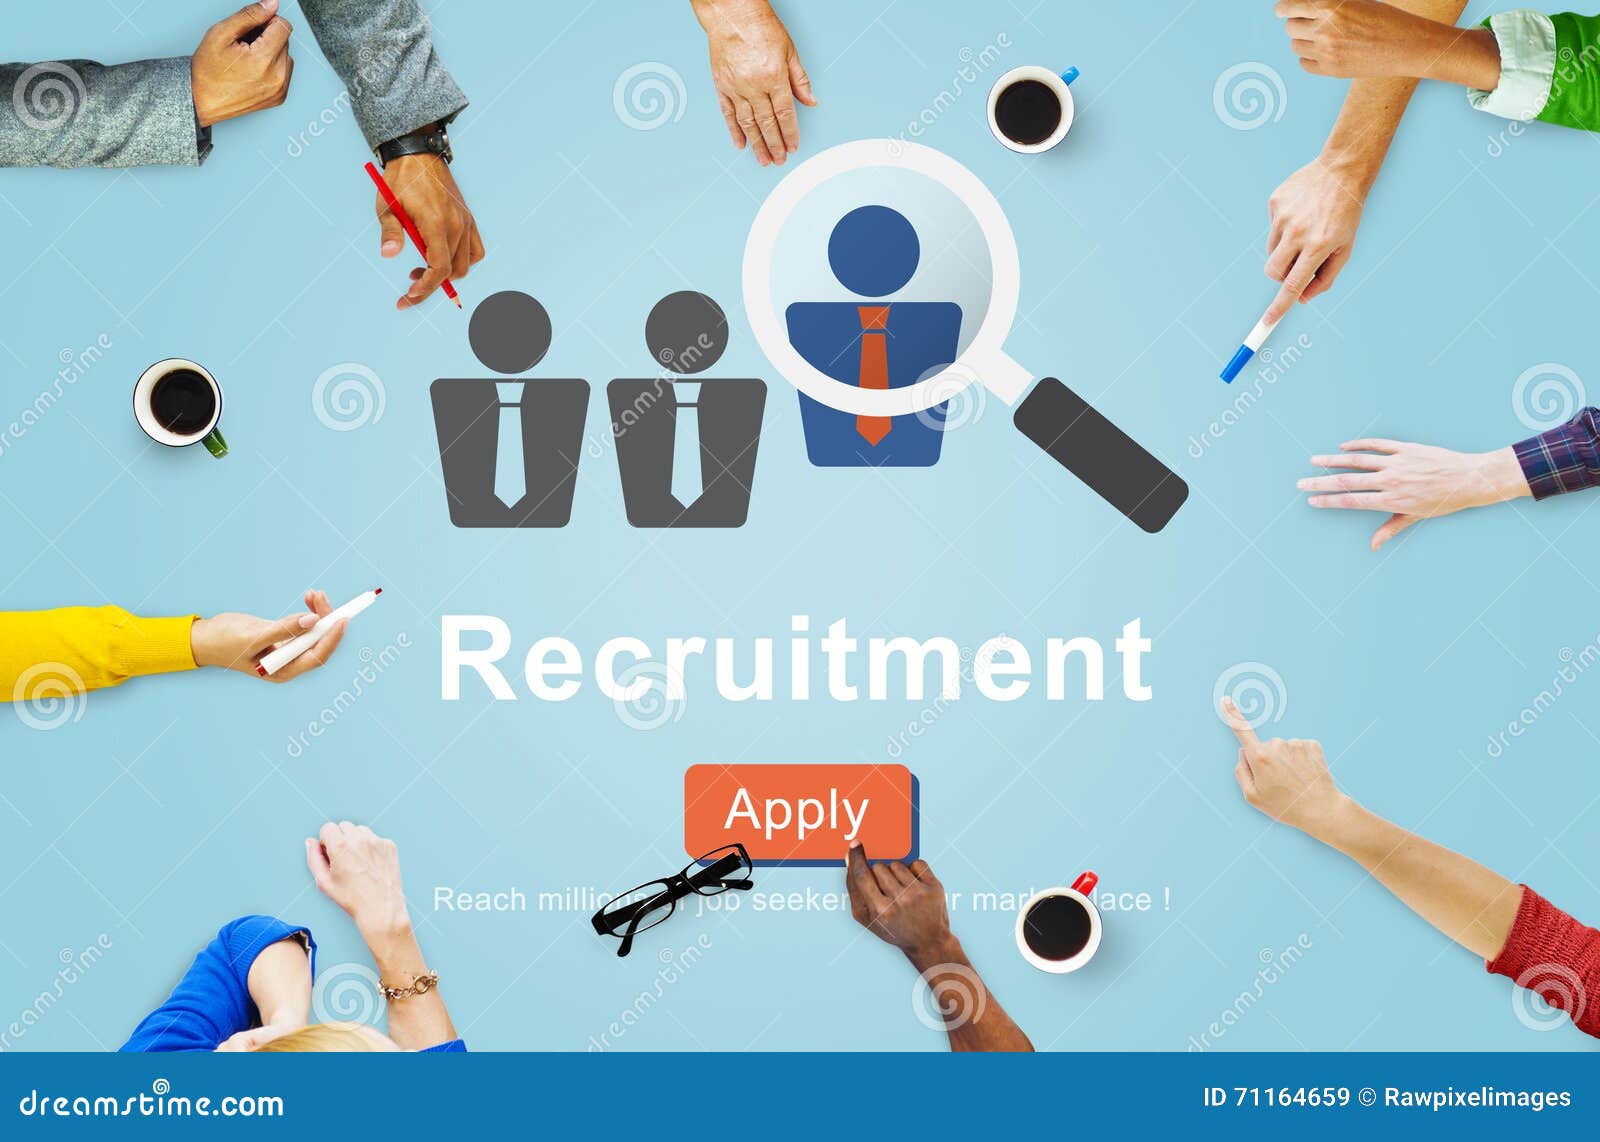 Recruitment resources